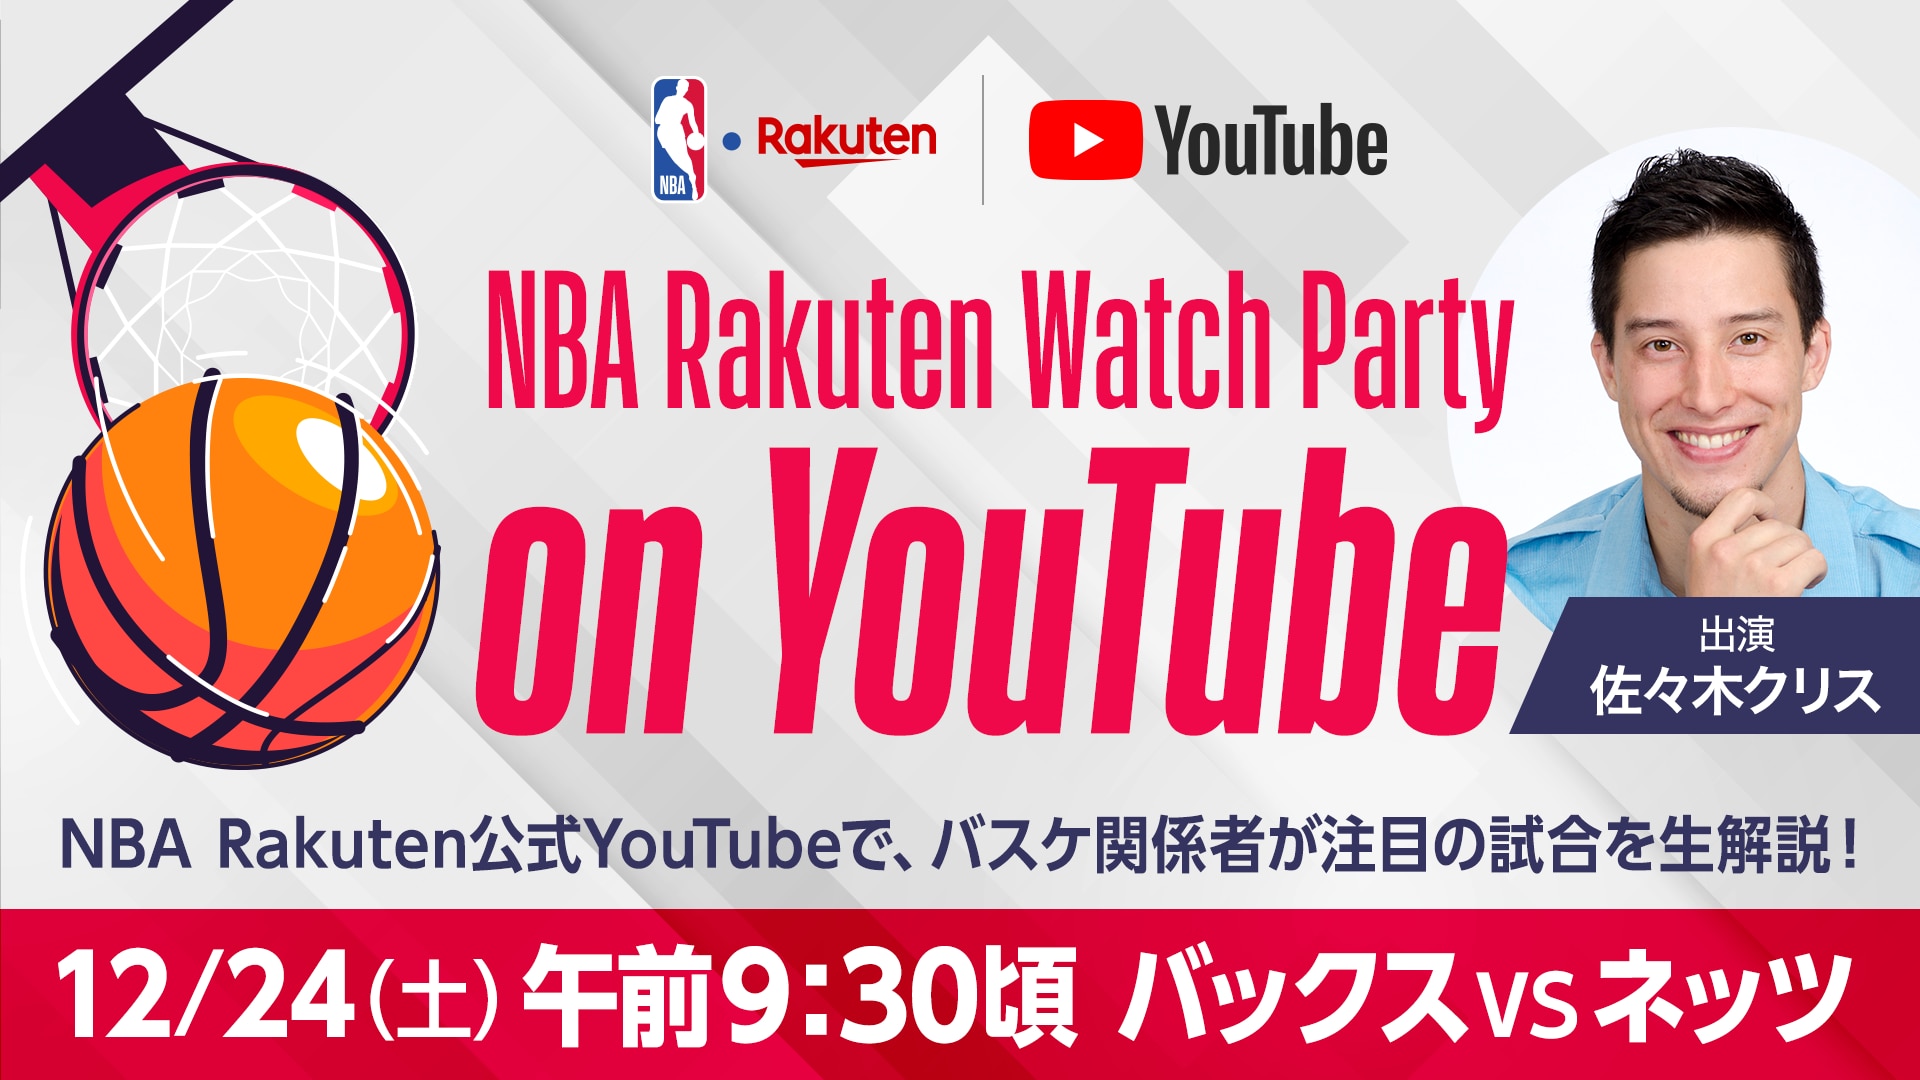 【お知らせ】NBA Rakuten公式YouTubeチャンネルで「NBA Rakuten Watch Party on YouTube」を実施　佐々木クリス氏の出演が決定